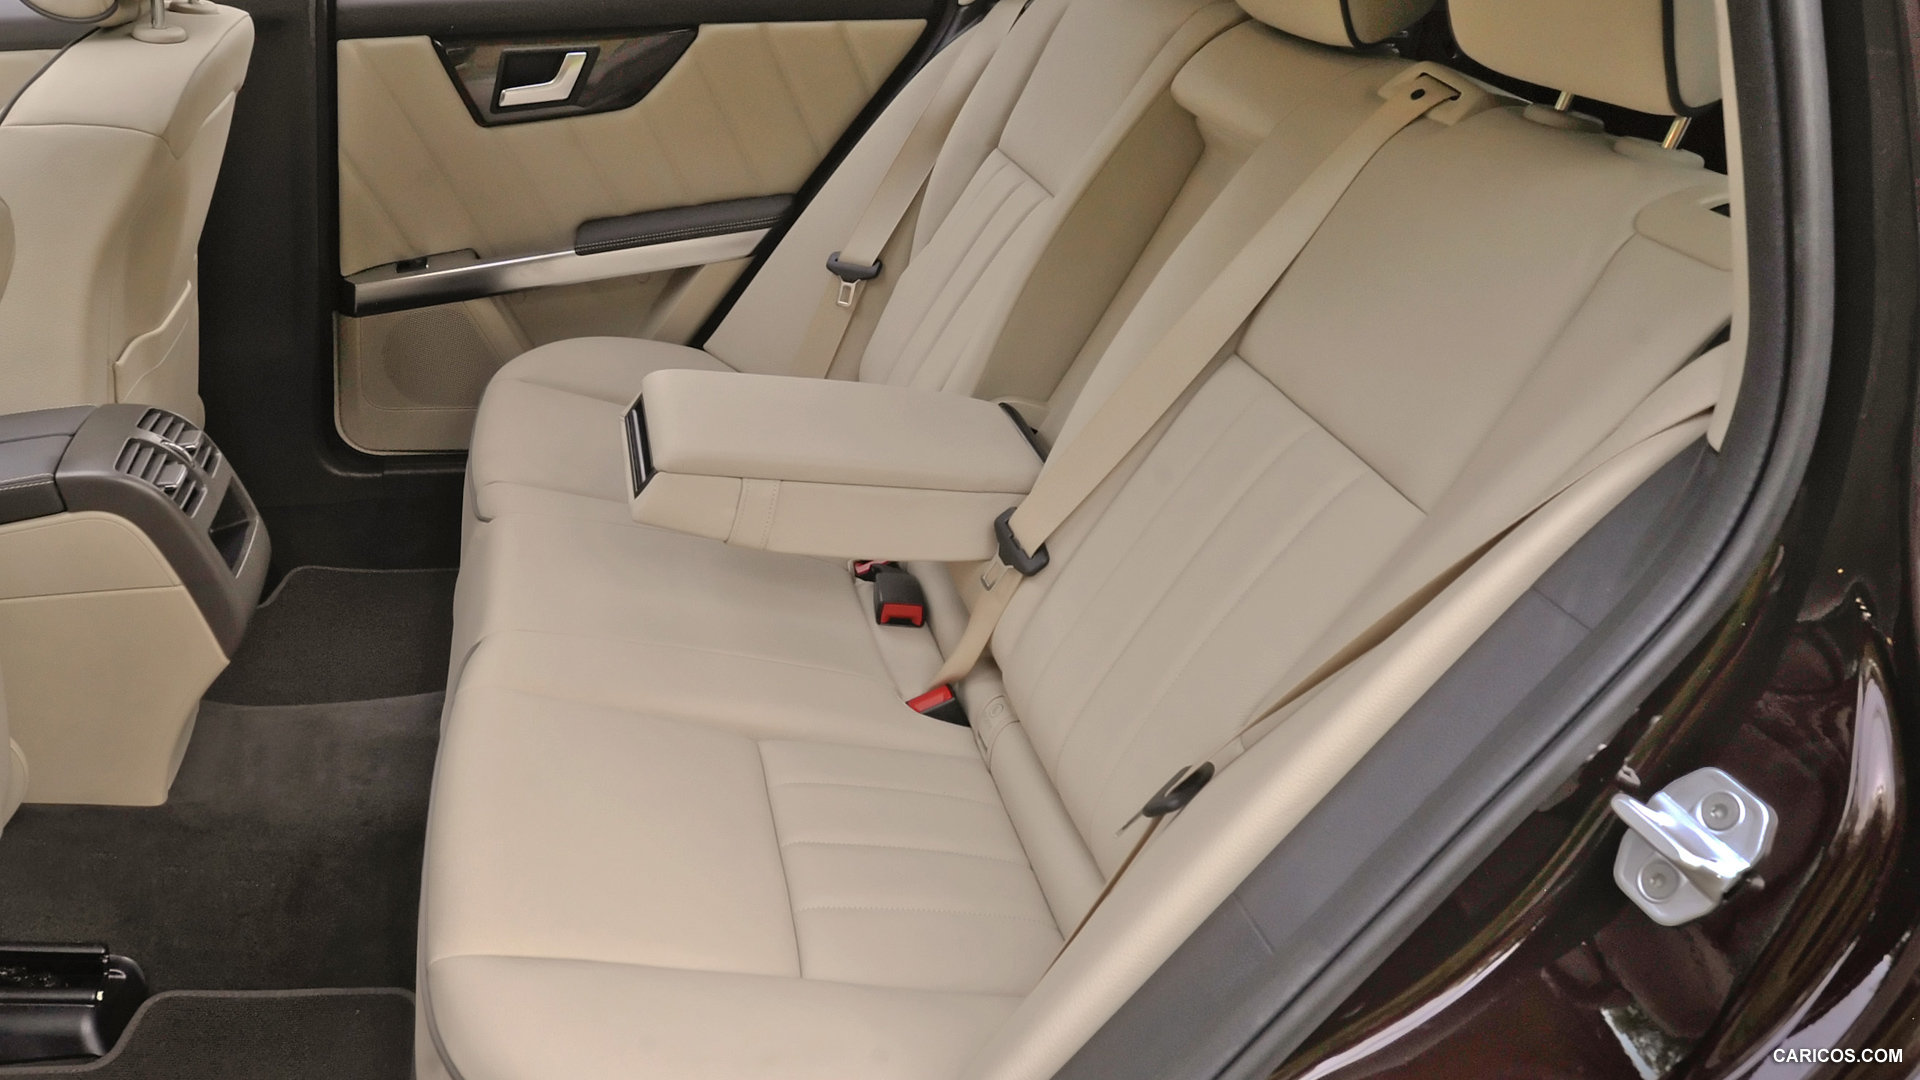 2013 Mercedes Benz Glk 350 4matic Interior Rear Seats Hd